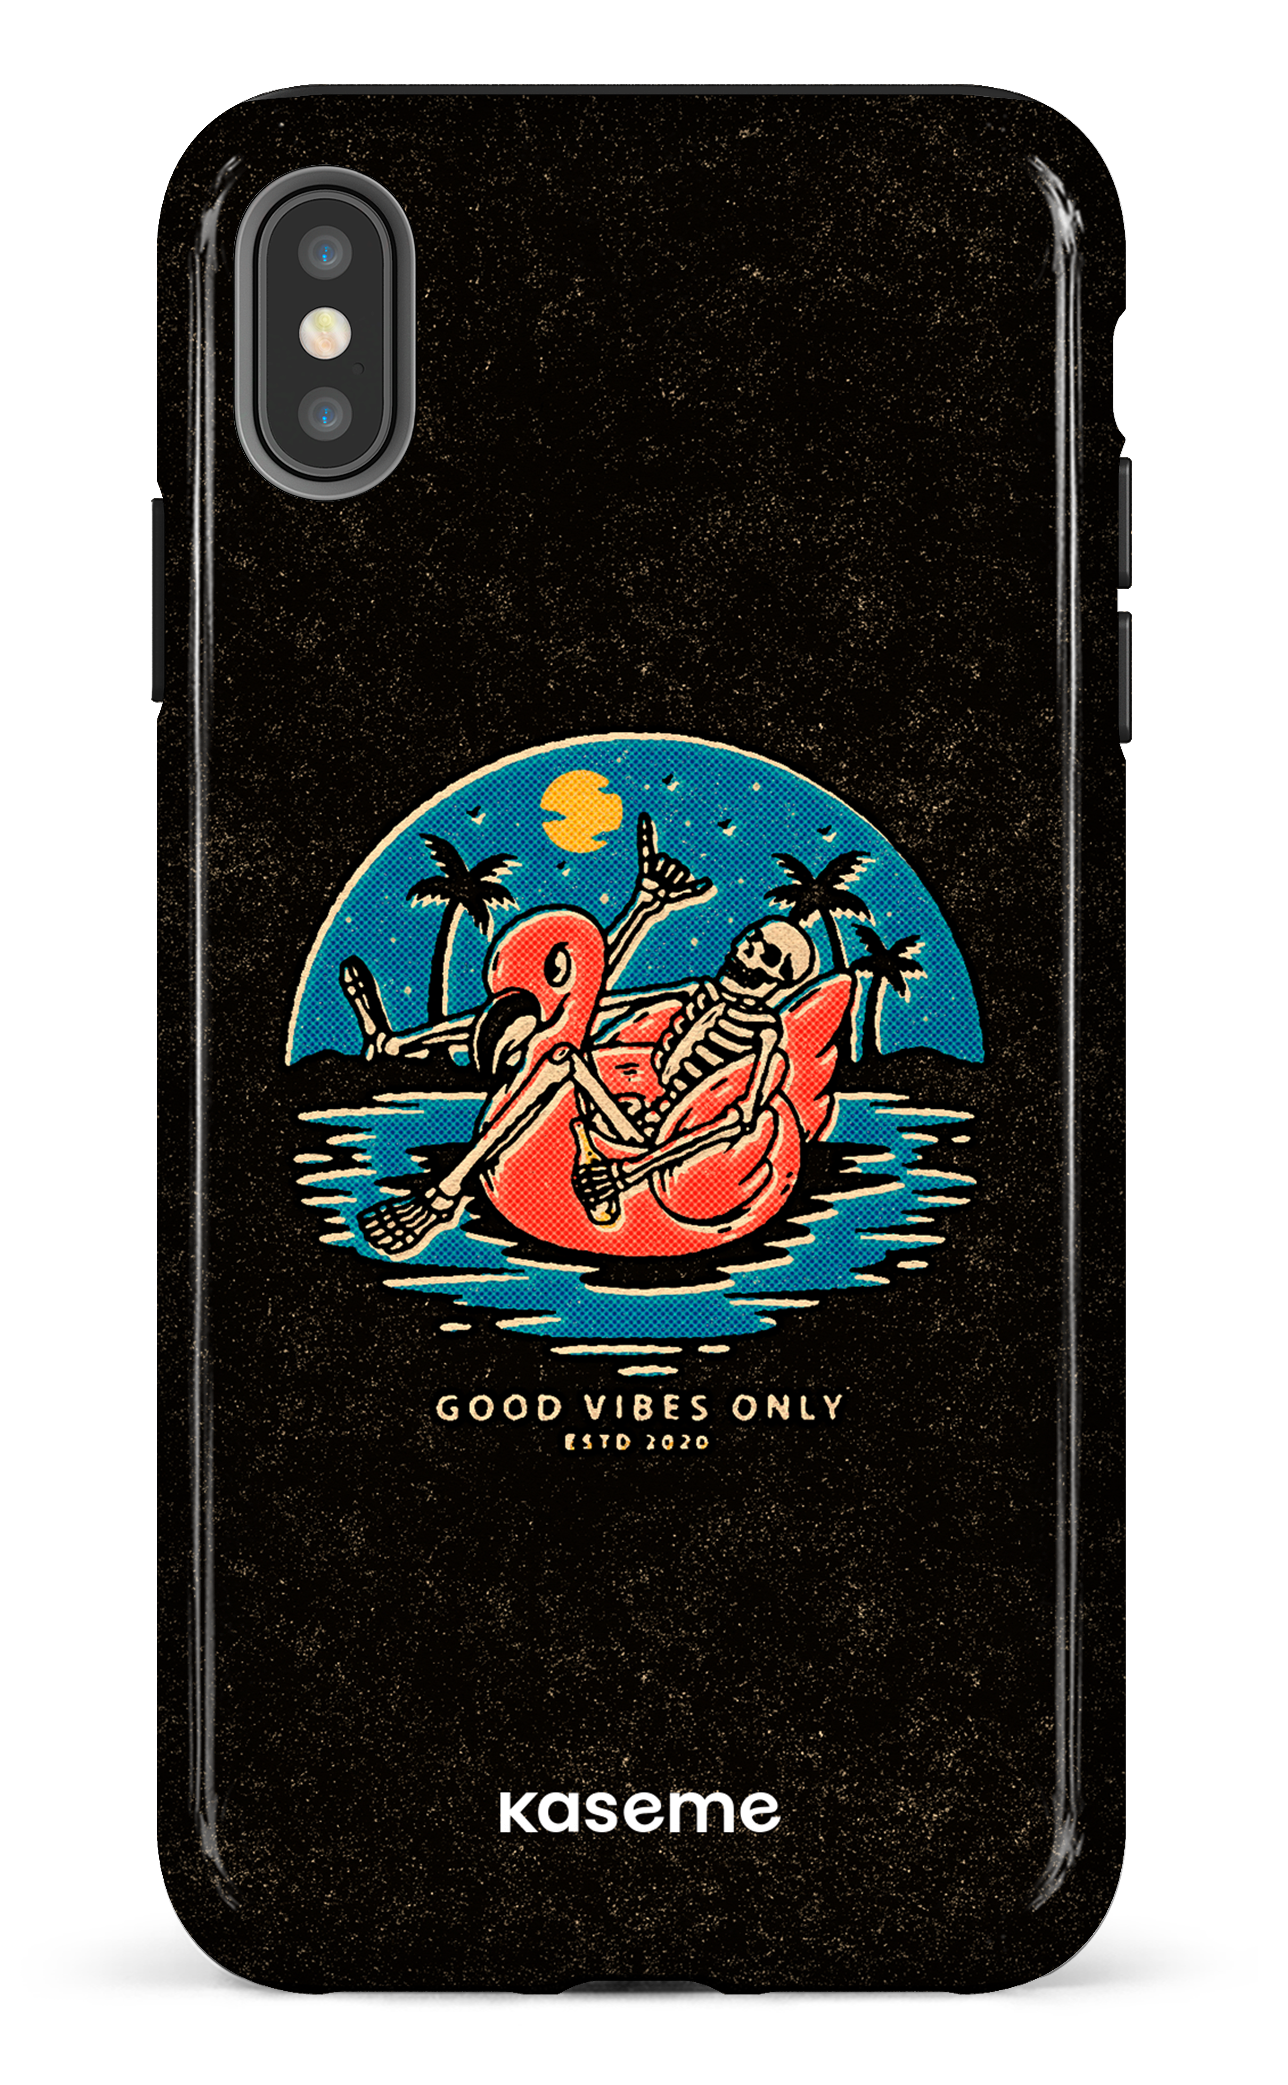 Seaside - iPhone XS Max